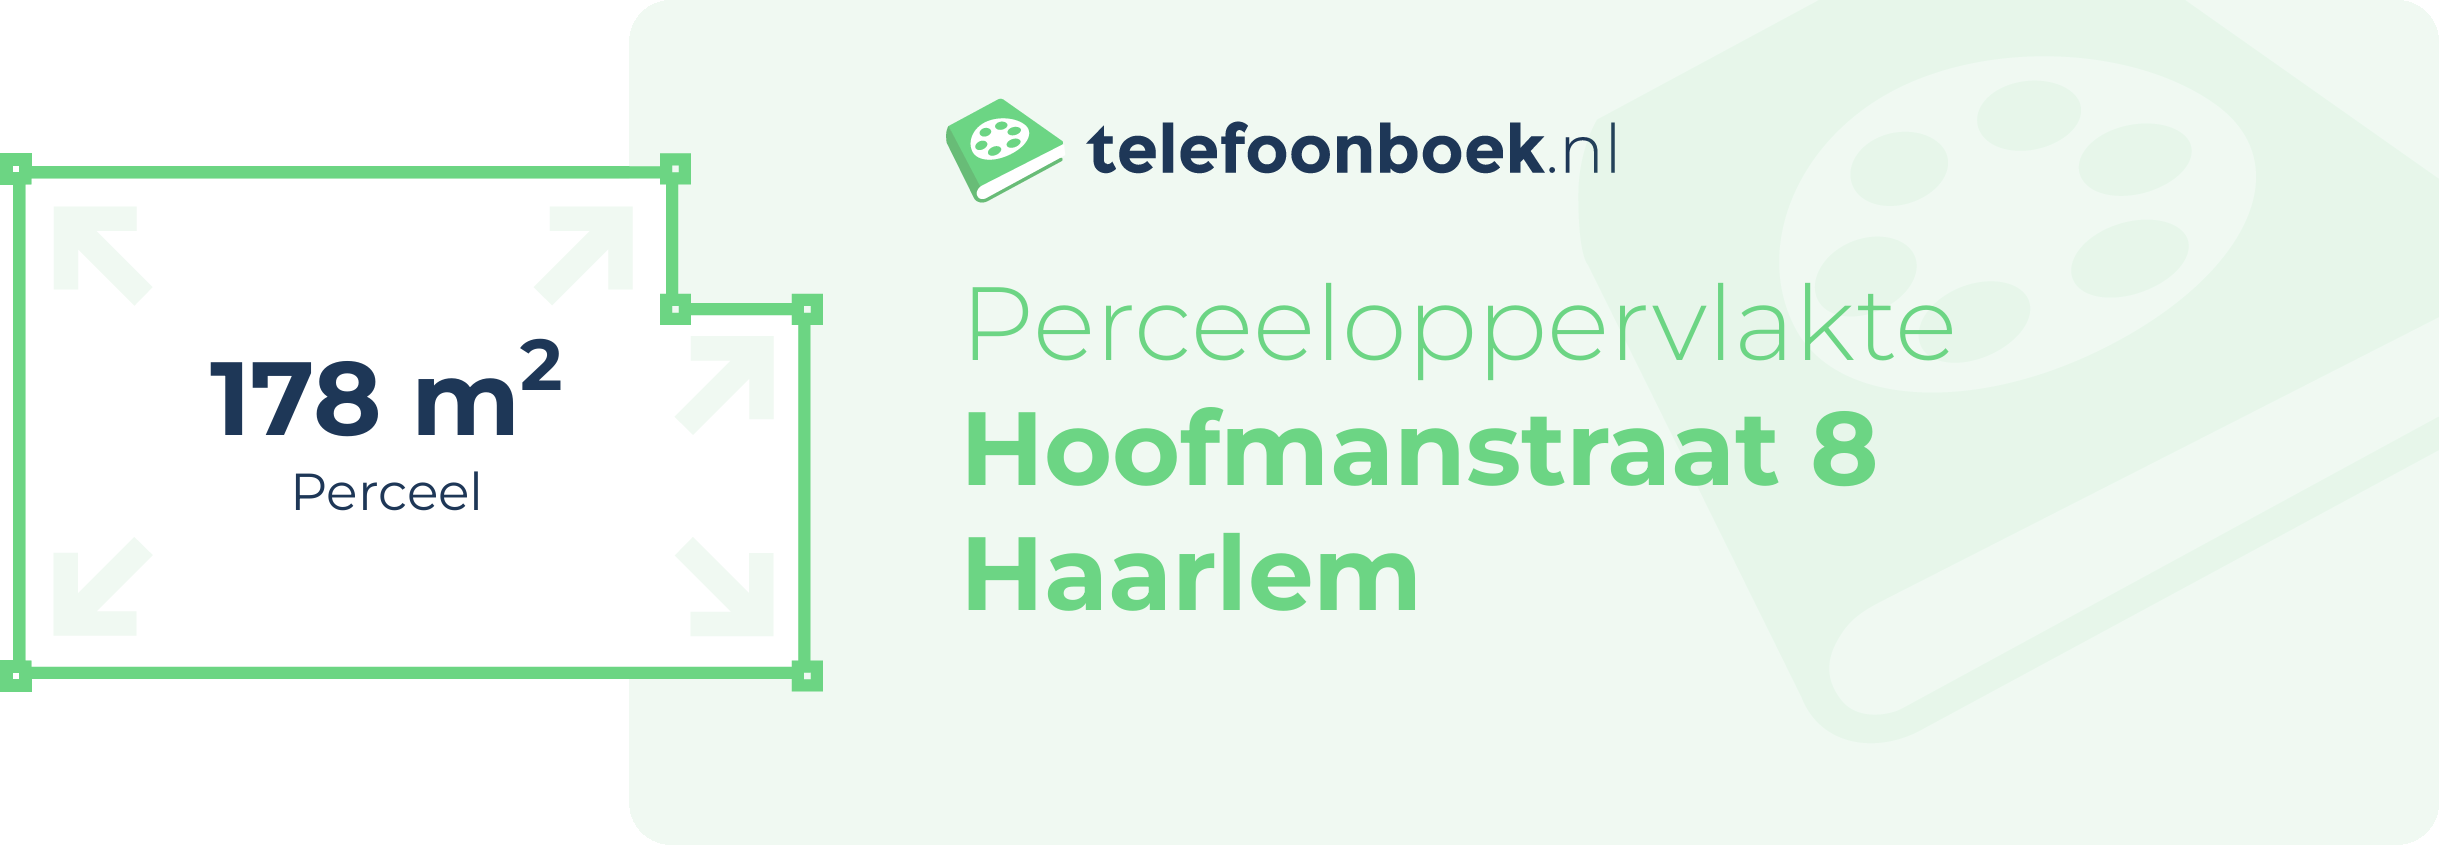 Perceeloppervlakte Hoofmanstraat 8 Haarlem